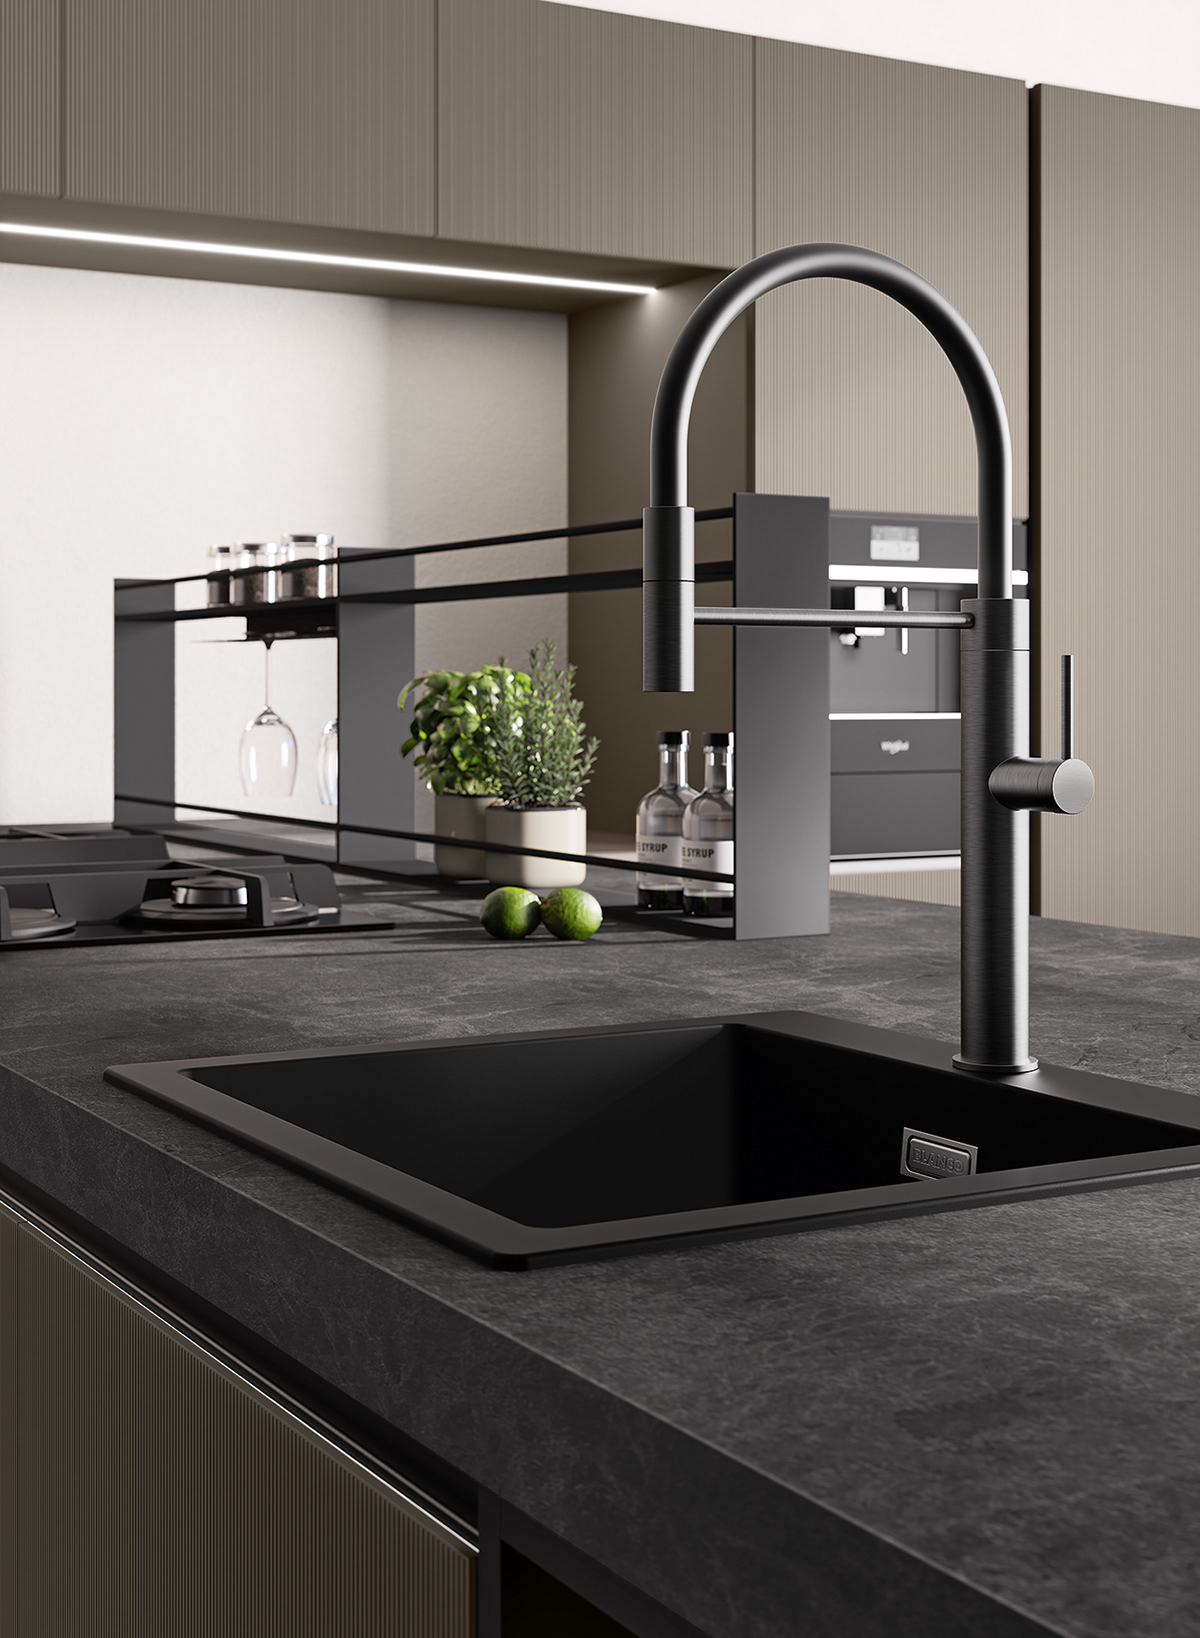 3D 3ds max architecture archviz CGI Render visualization kitchen Interior